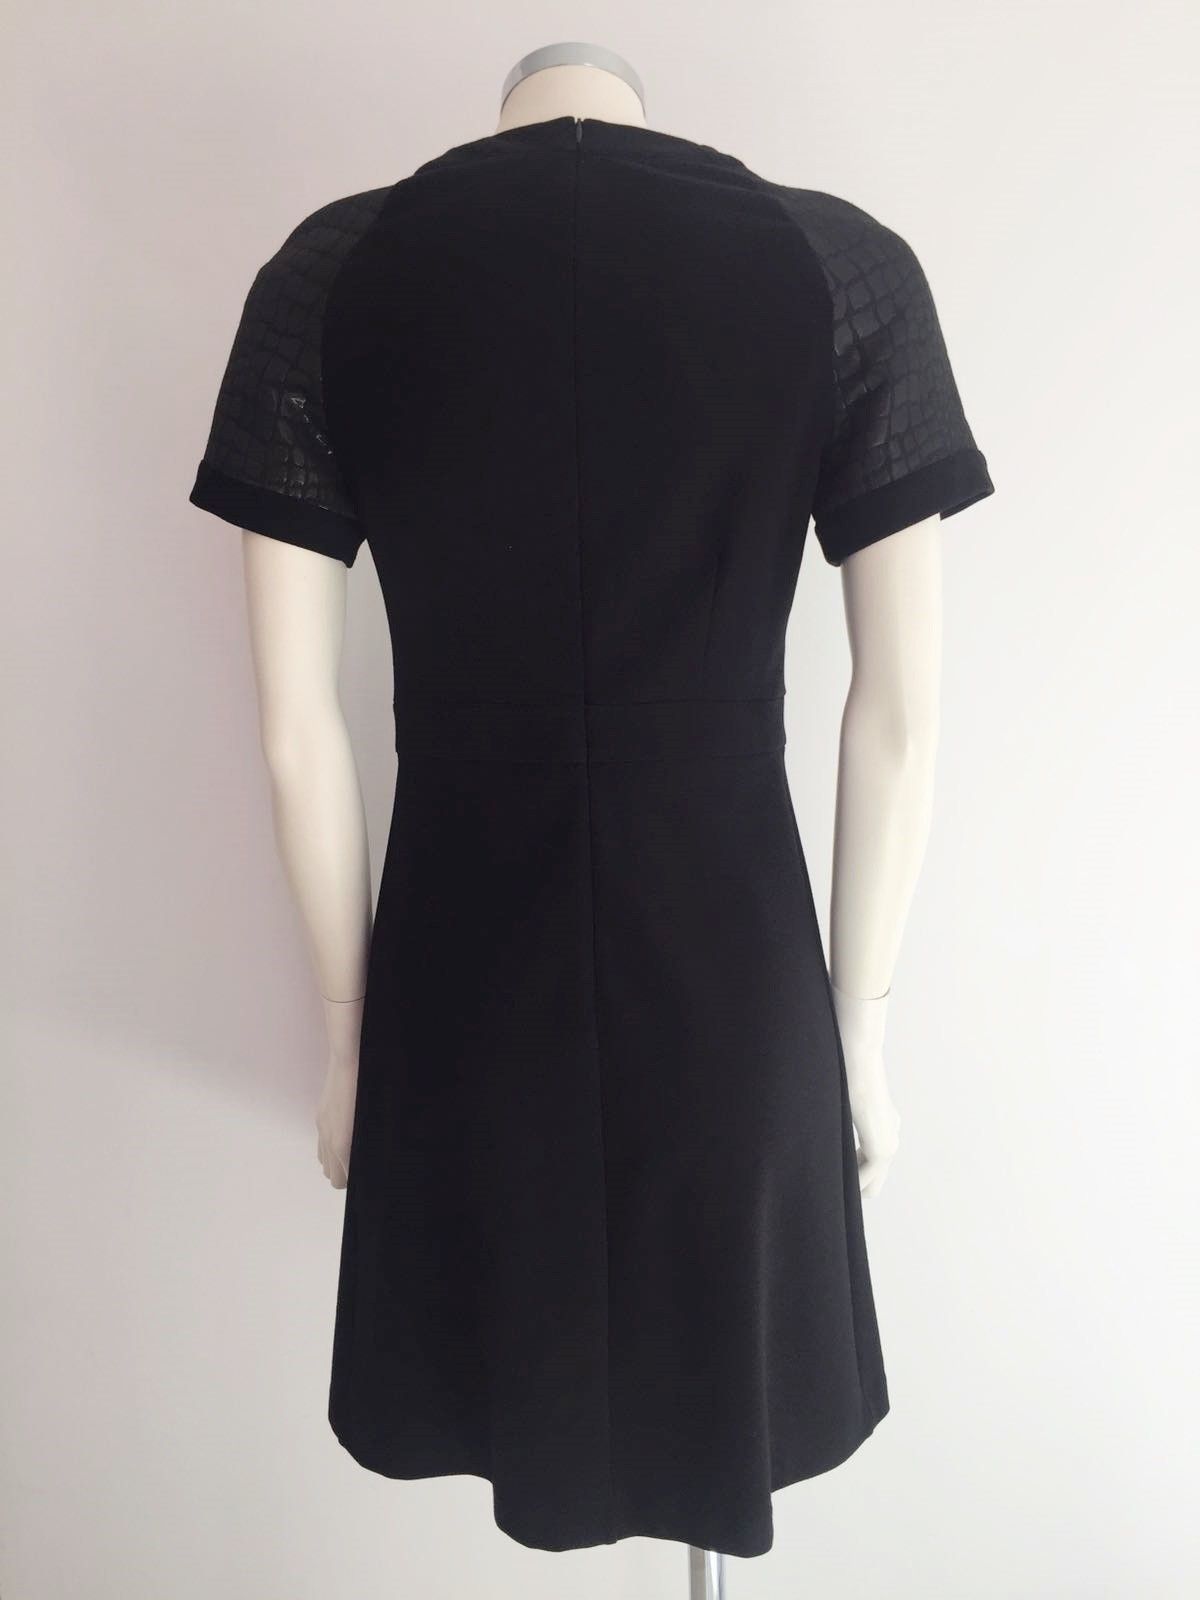 Emmjeilove Black Sleeved dress Cod.Alison